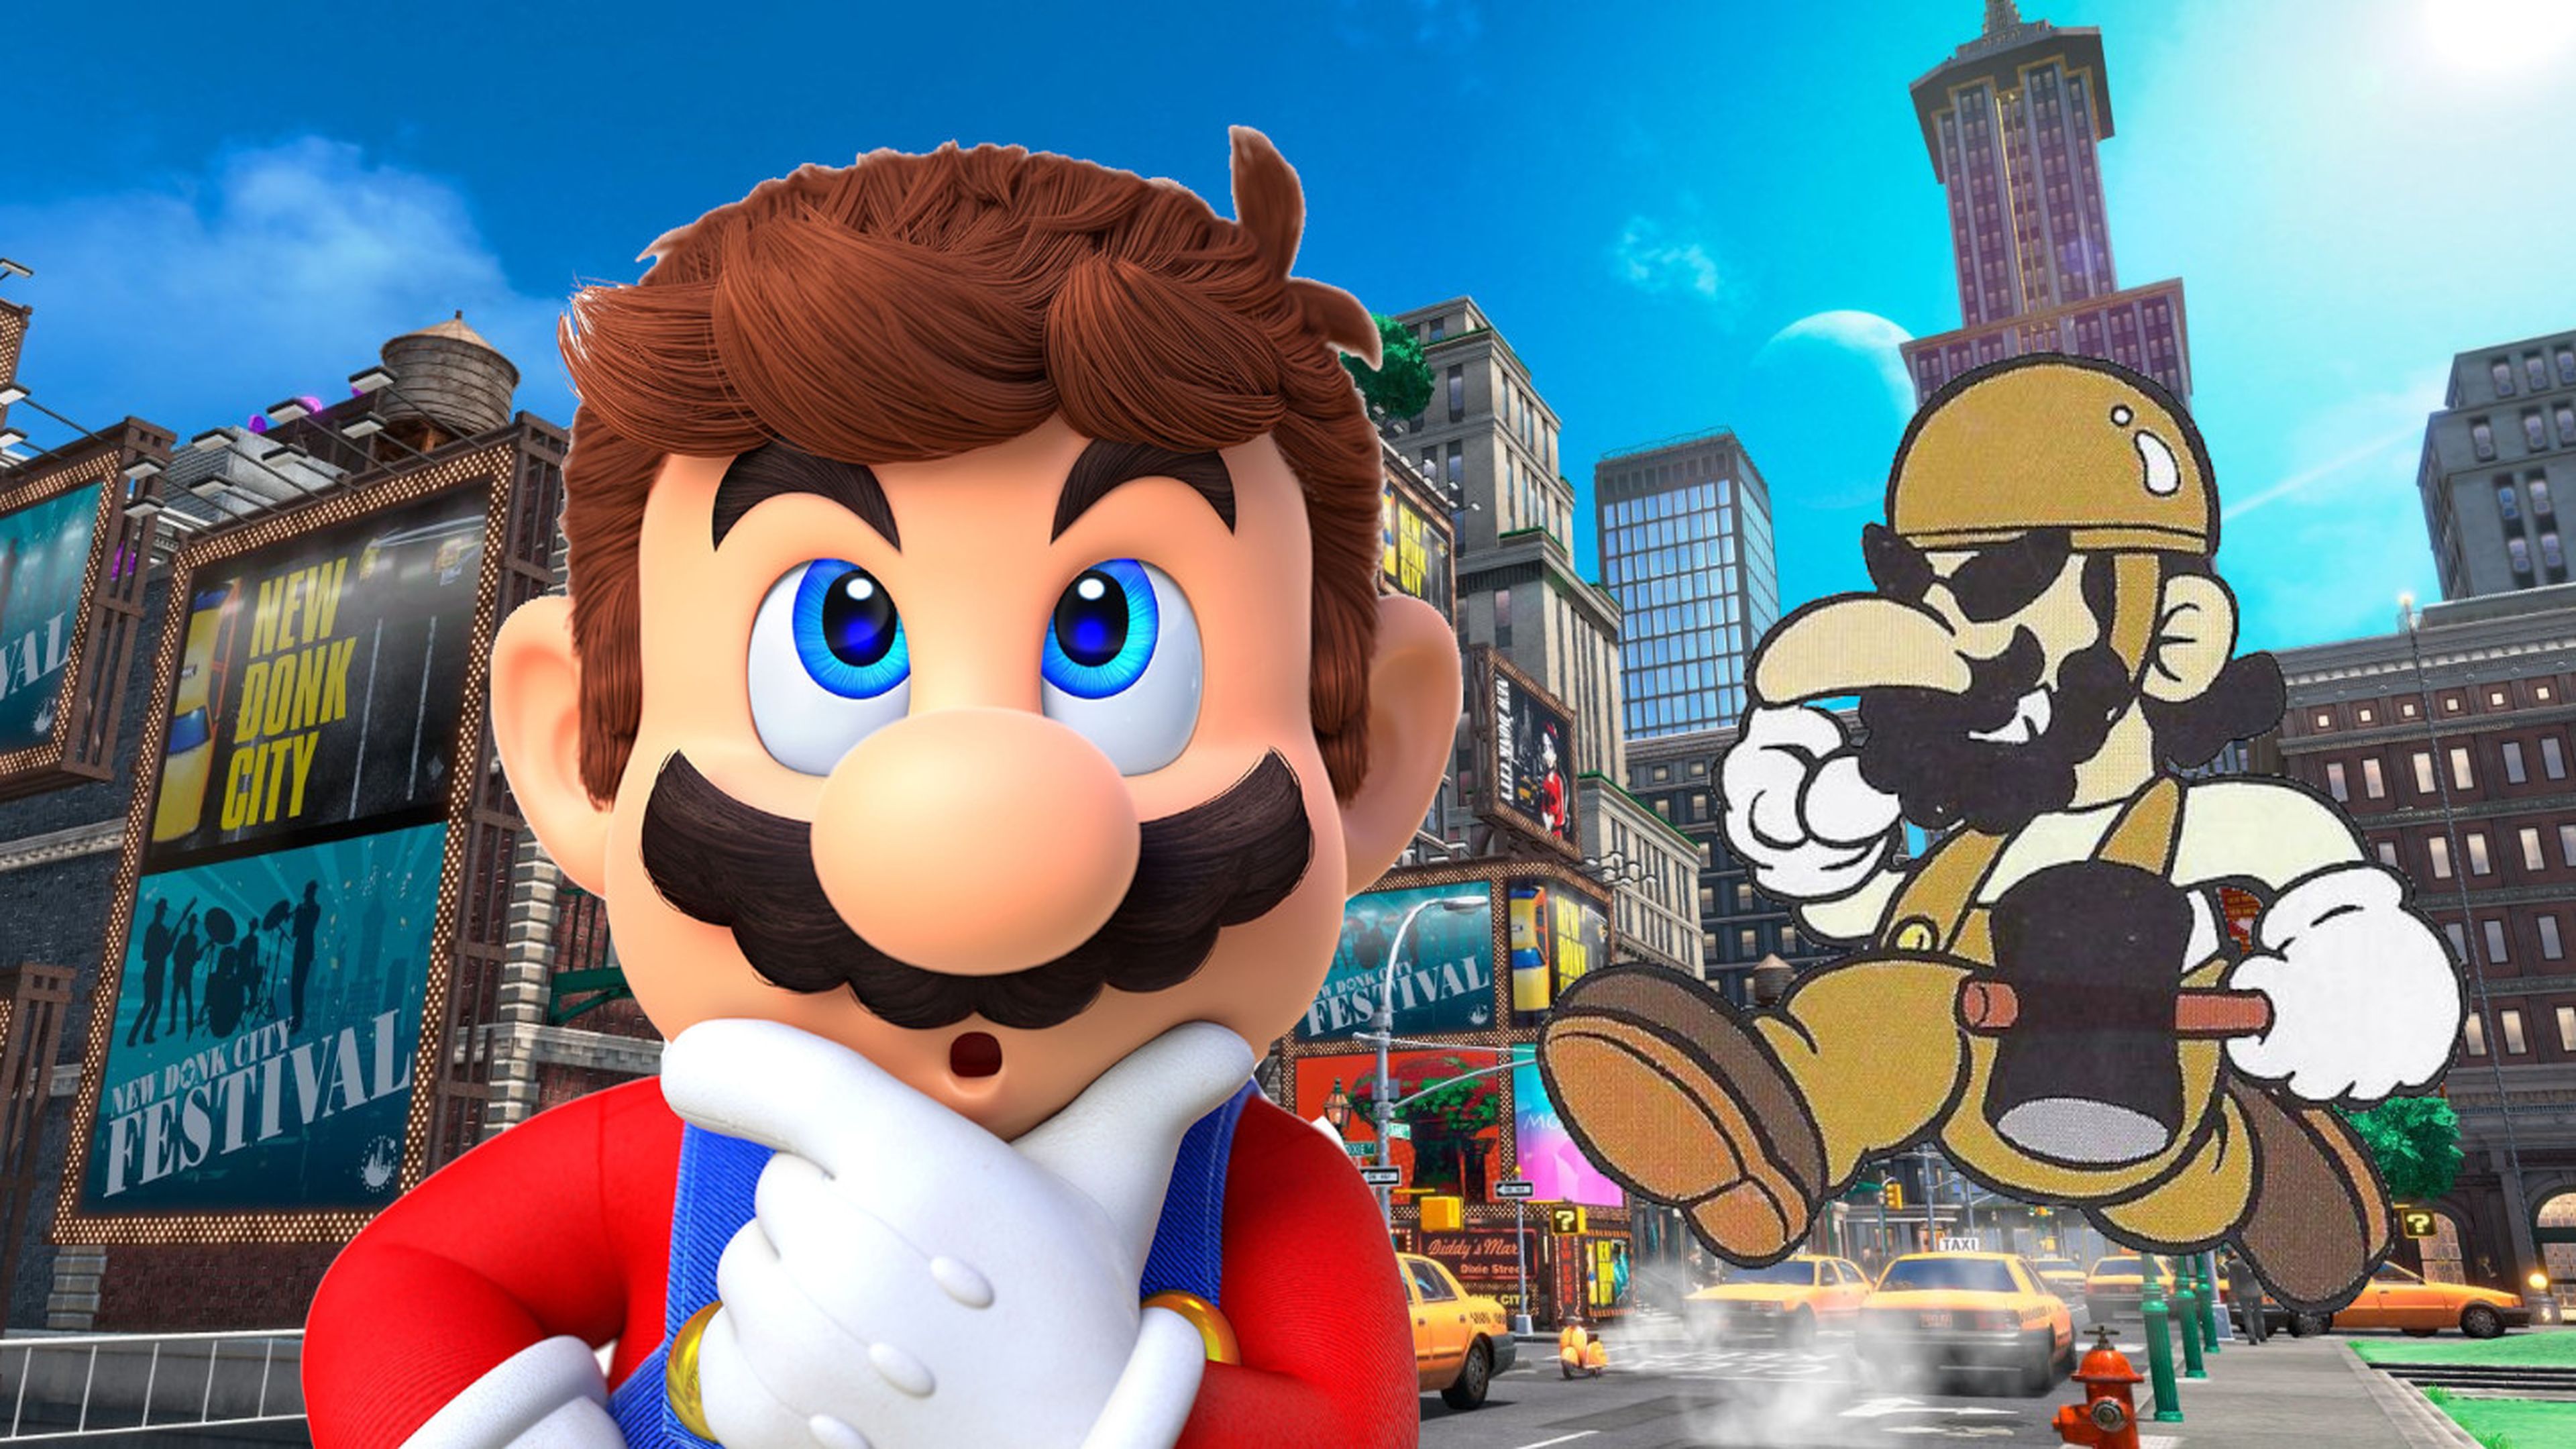 El próximo juego de Super Mario filtra sus primeros detalles: cooperativo,  2D y Peach jugable, super mario 